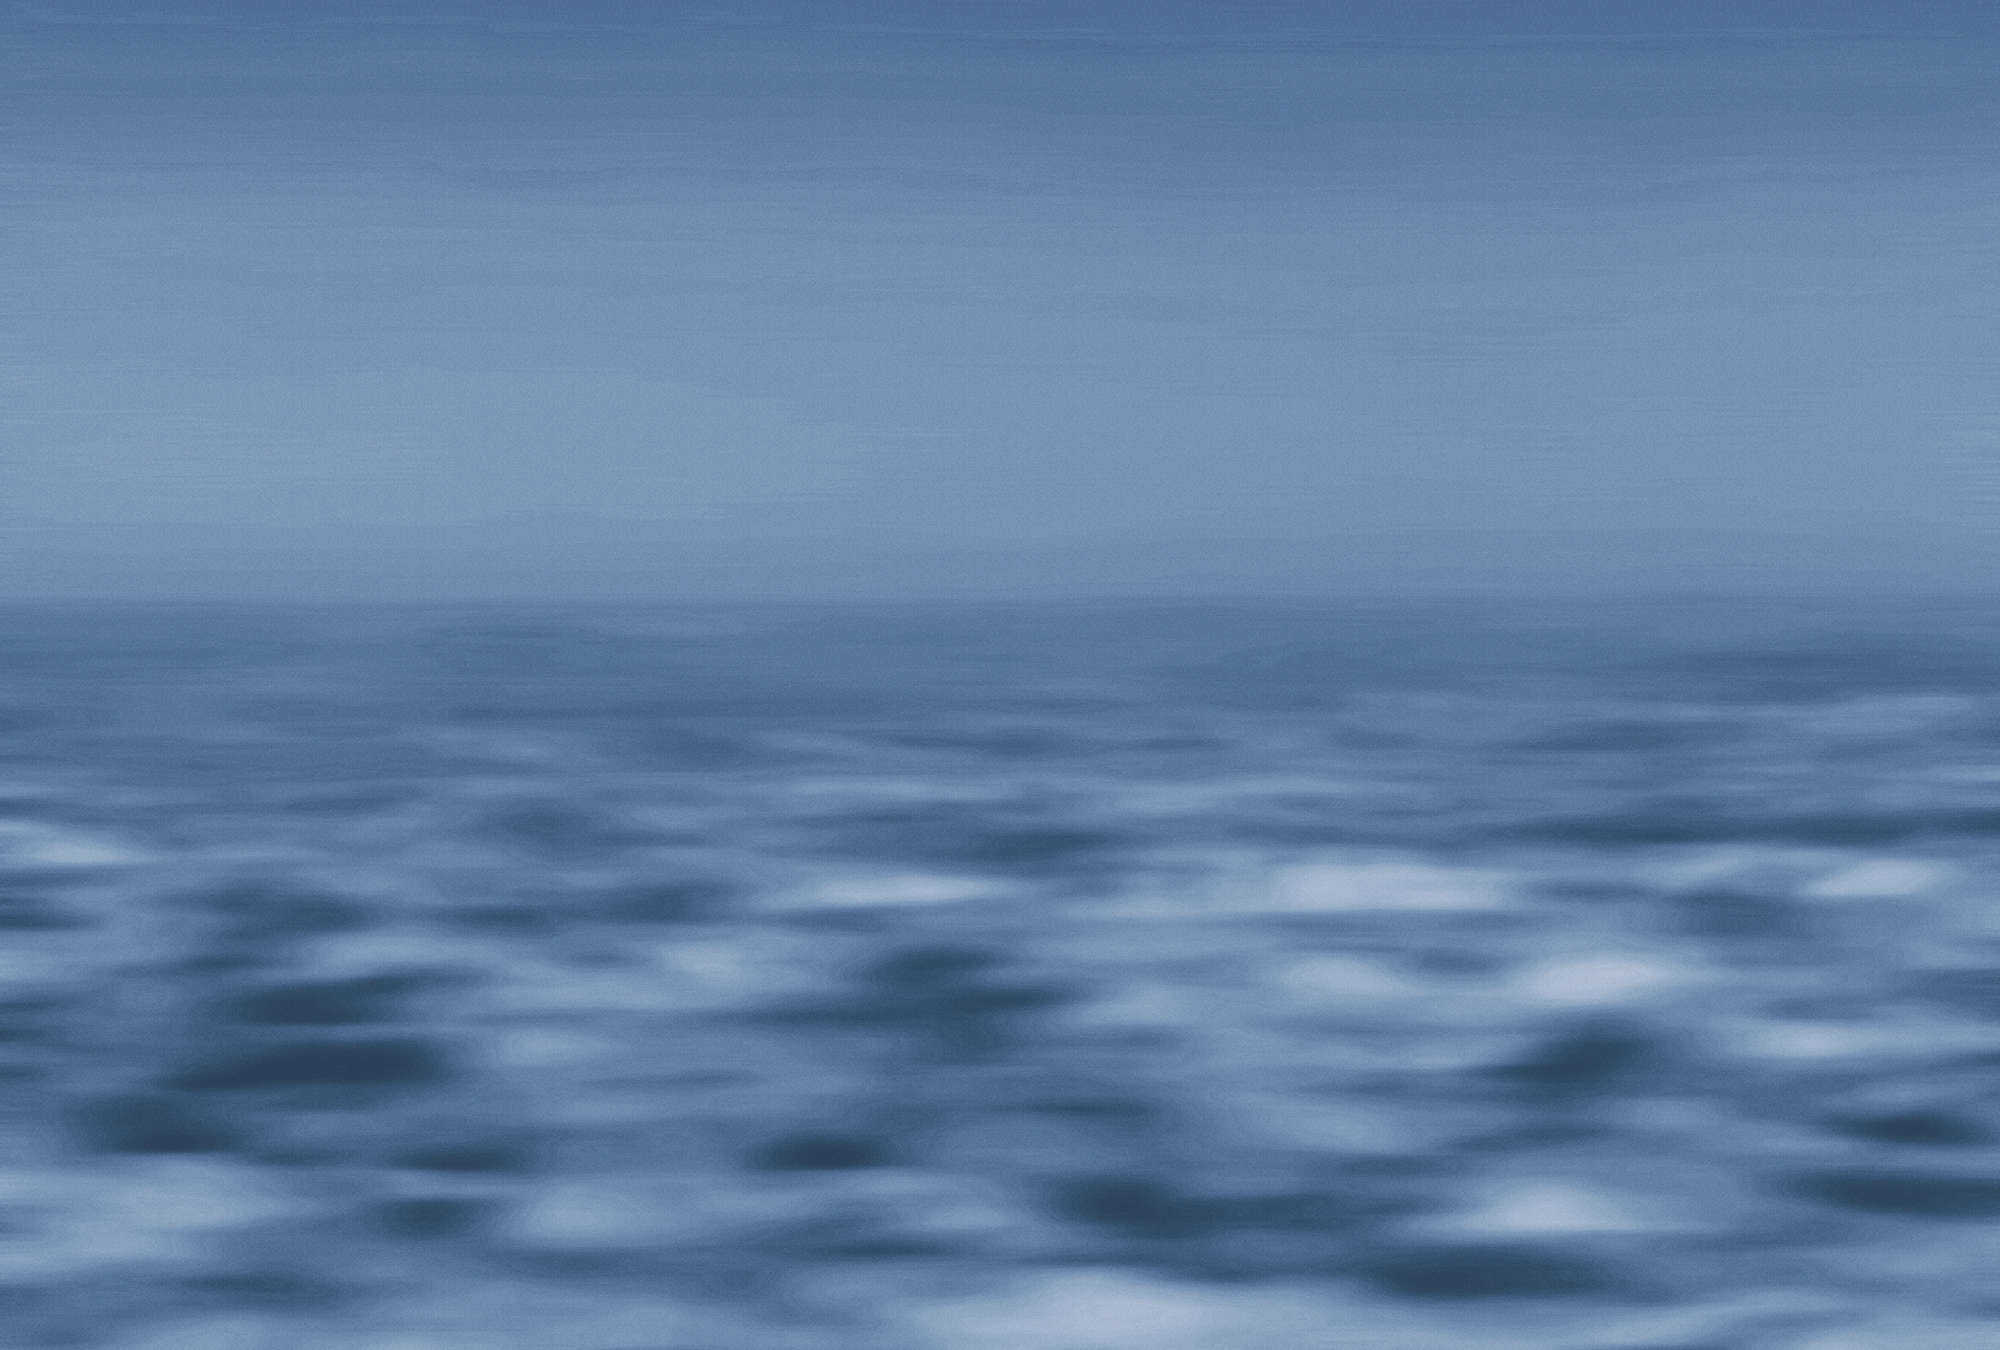             Carta da parati marittima mare, mondo astratto dell'acqua - blu, bianco
        